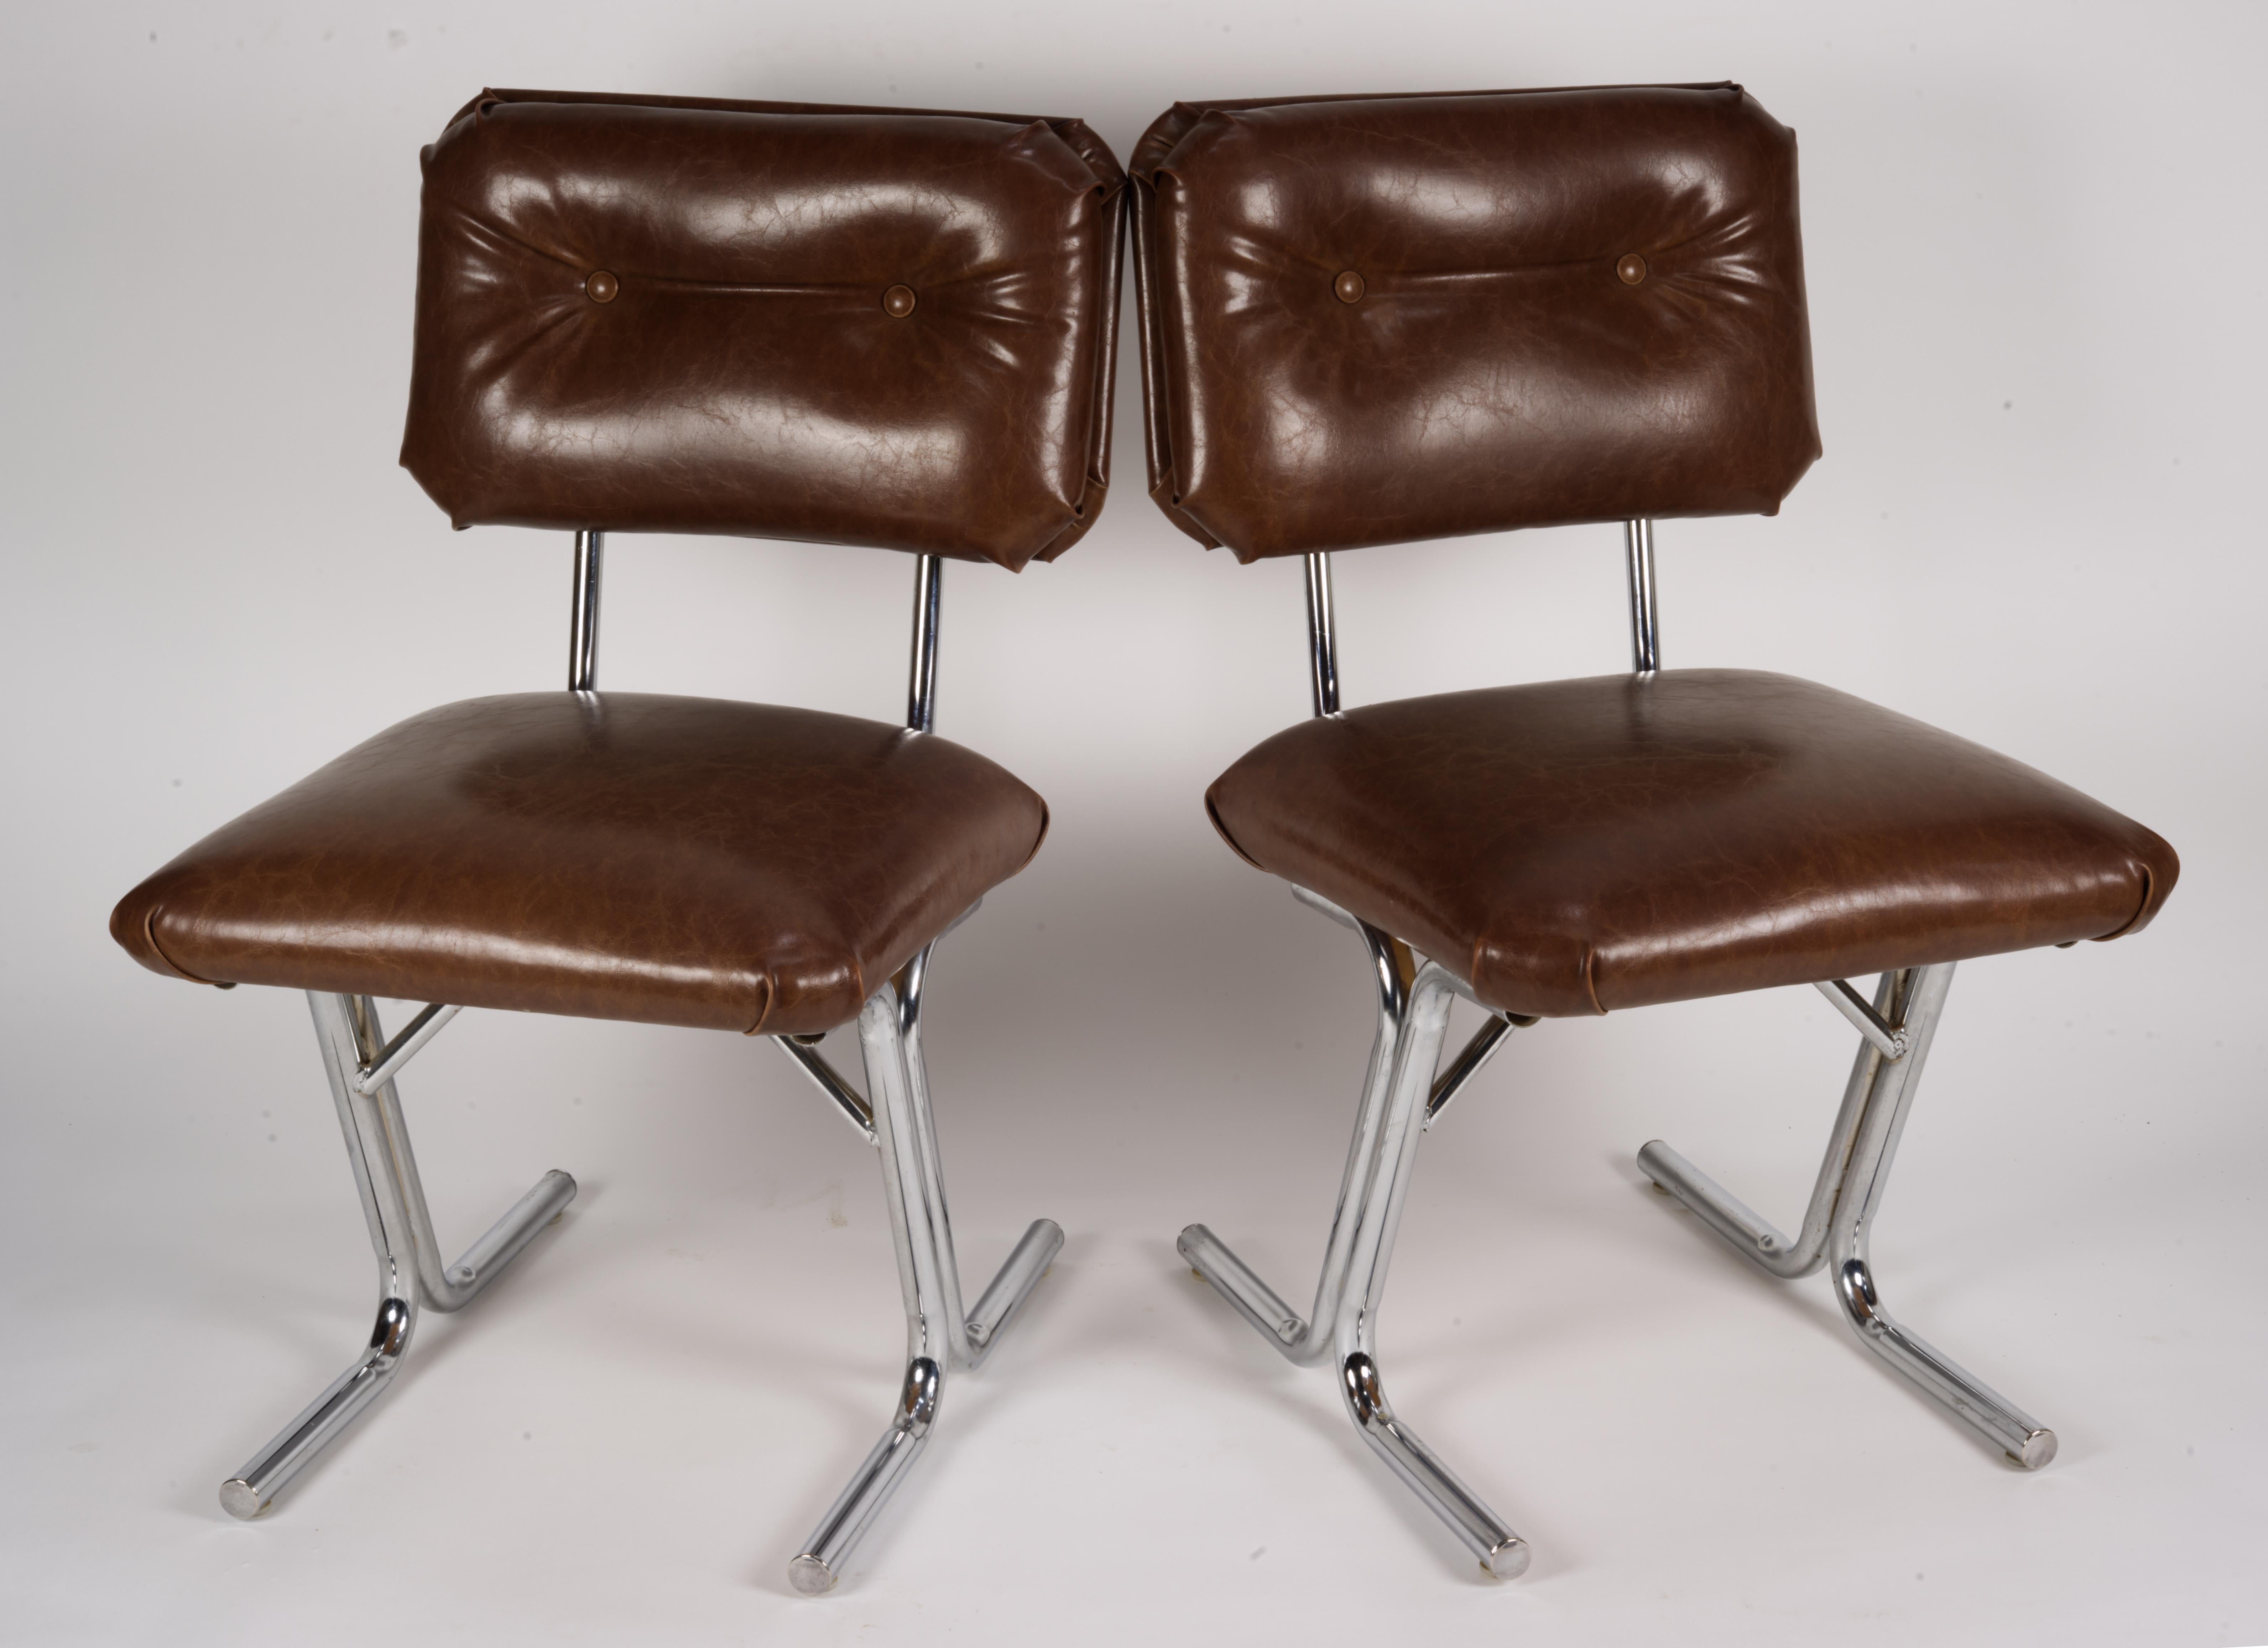 Paire de chaises d'appoint MCM en acier et vinyle marron. 
Usure mineure de l'acier. Le vinyle présente quelques pertes de 0,25